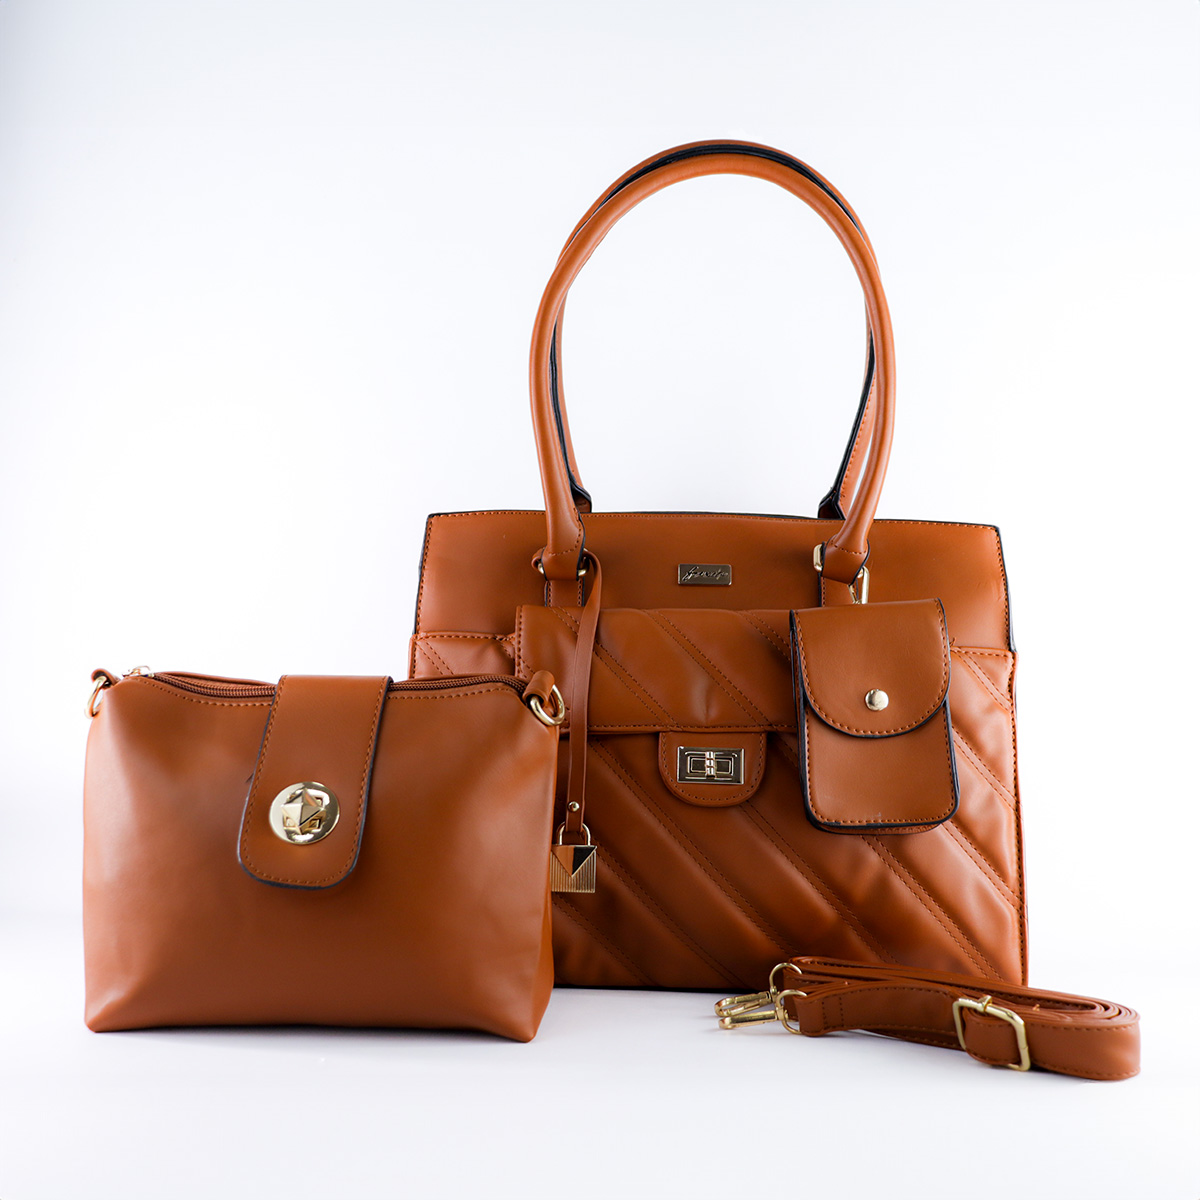 ¡Completa tu estilo con nuestro bolso café, el accesorio perfecto para resaltar en tu día a día!